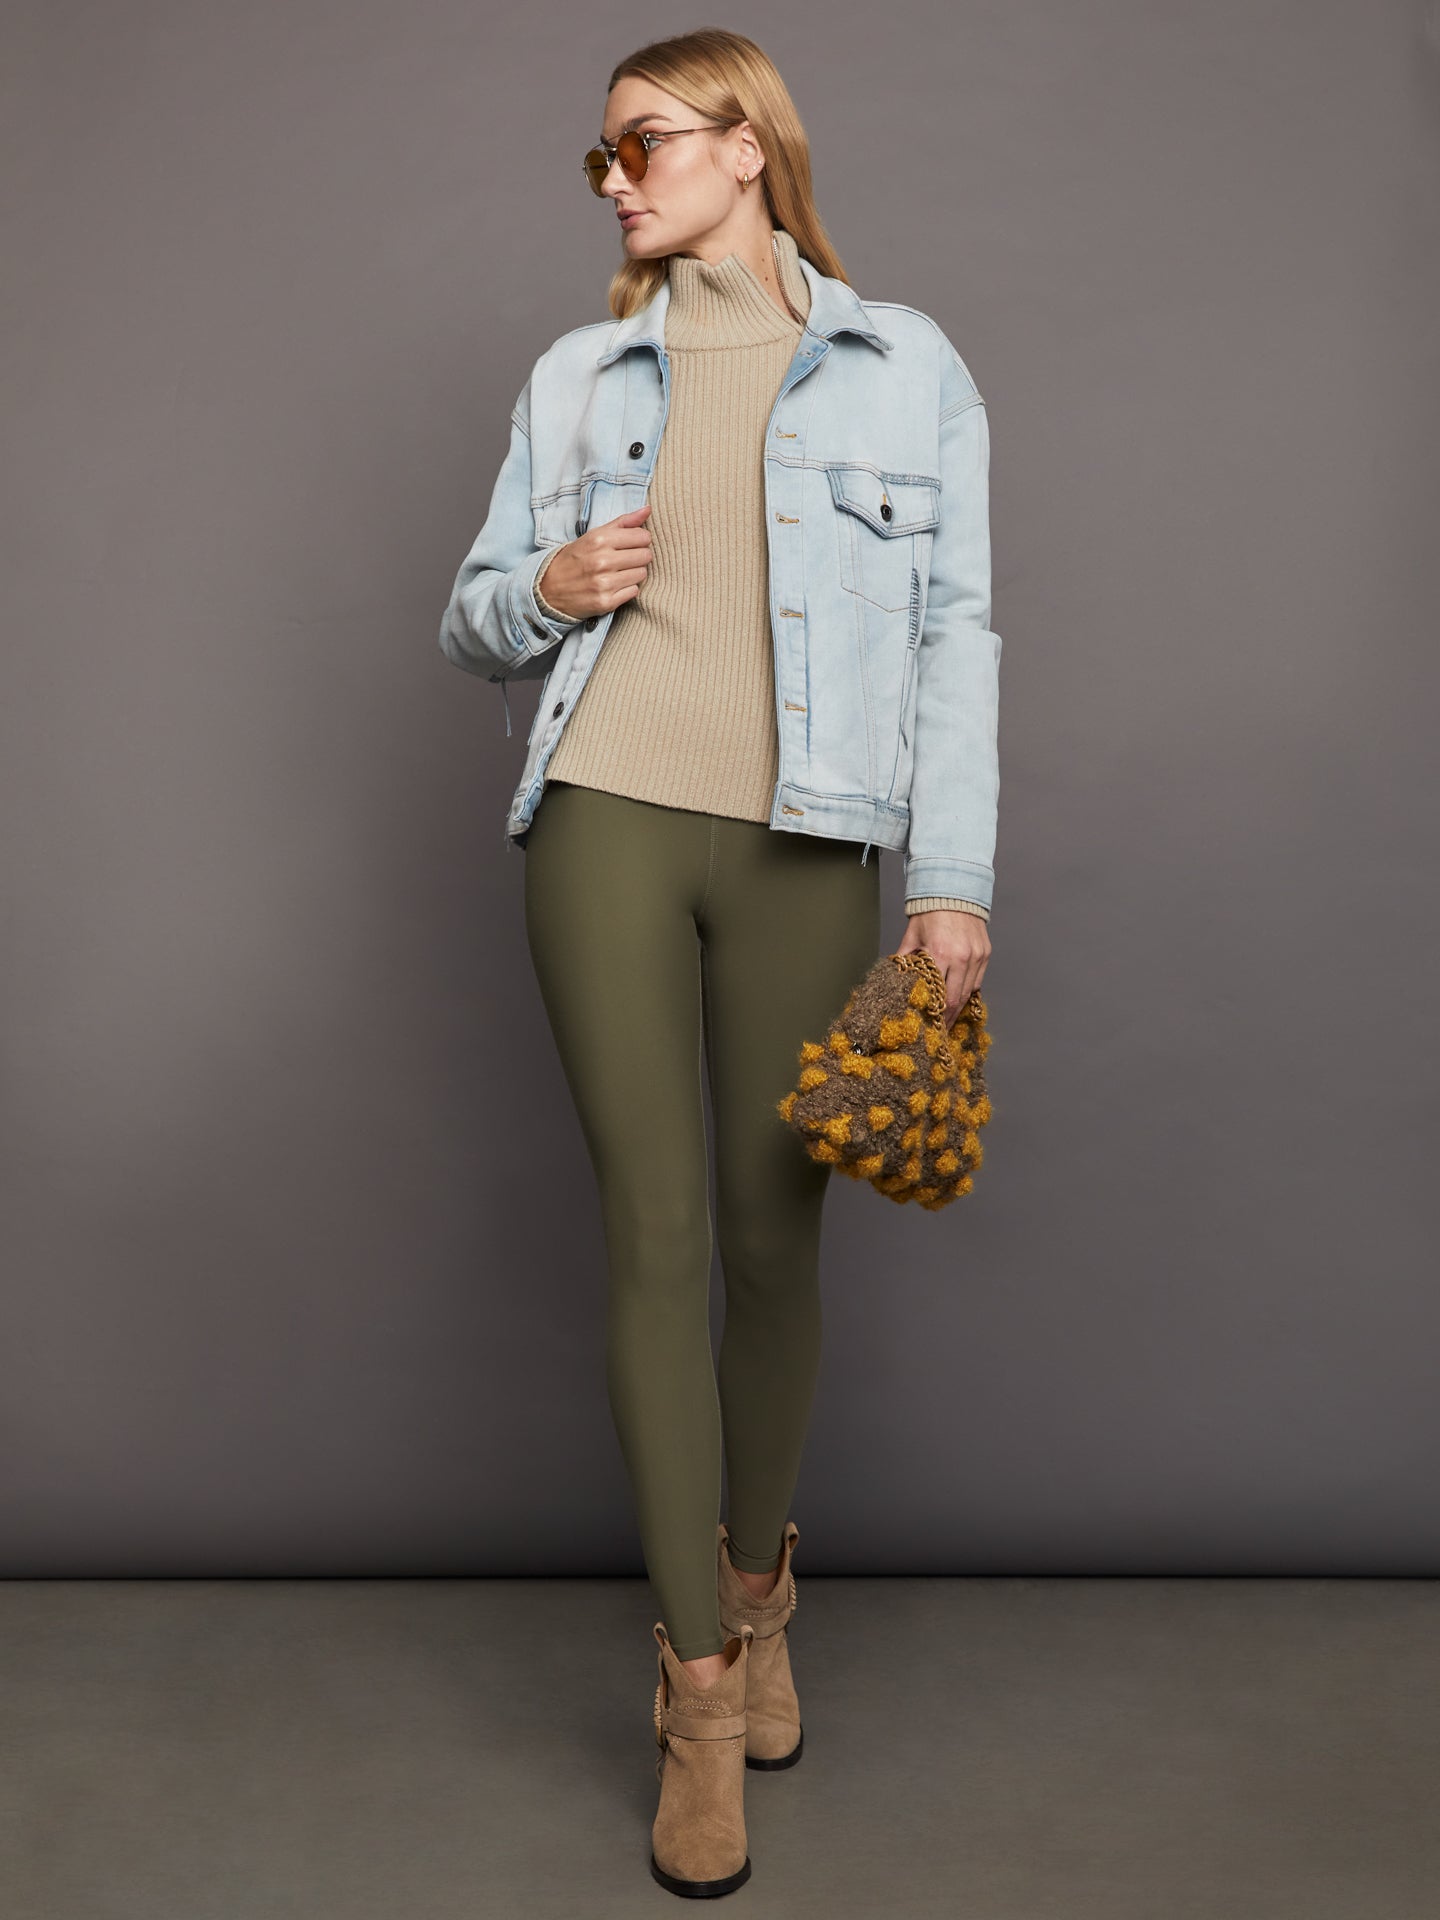 Unique Bargains Women's Plus Corduroy Jean Contrast Color Denim Jackets  Vests - Walmart.com